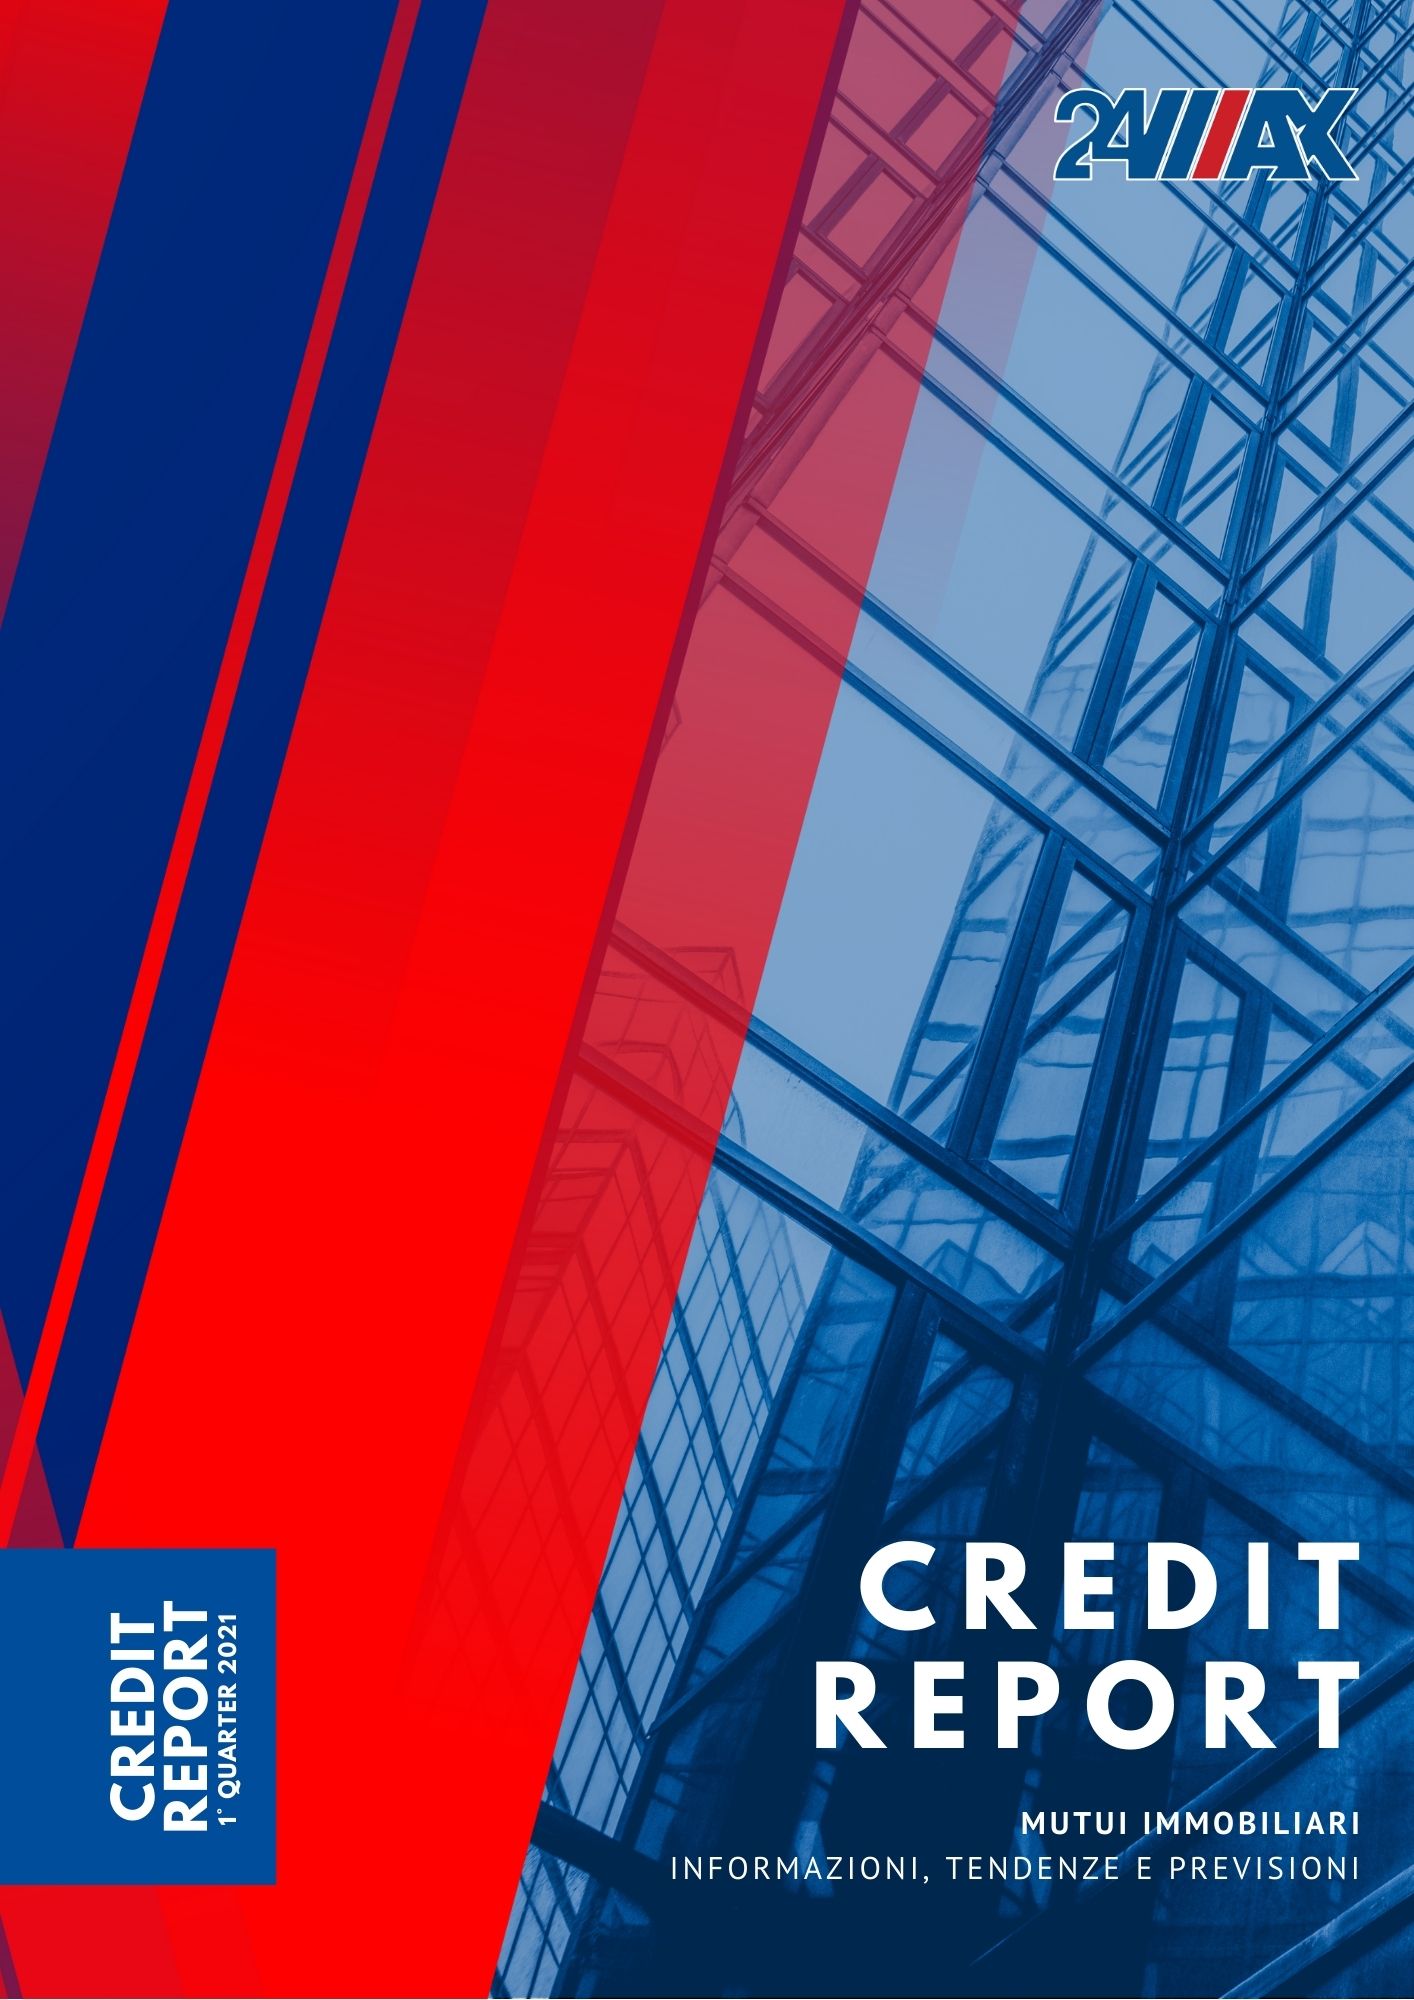 24MAX rilascia il Credit Report del primo trimestre 2021